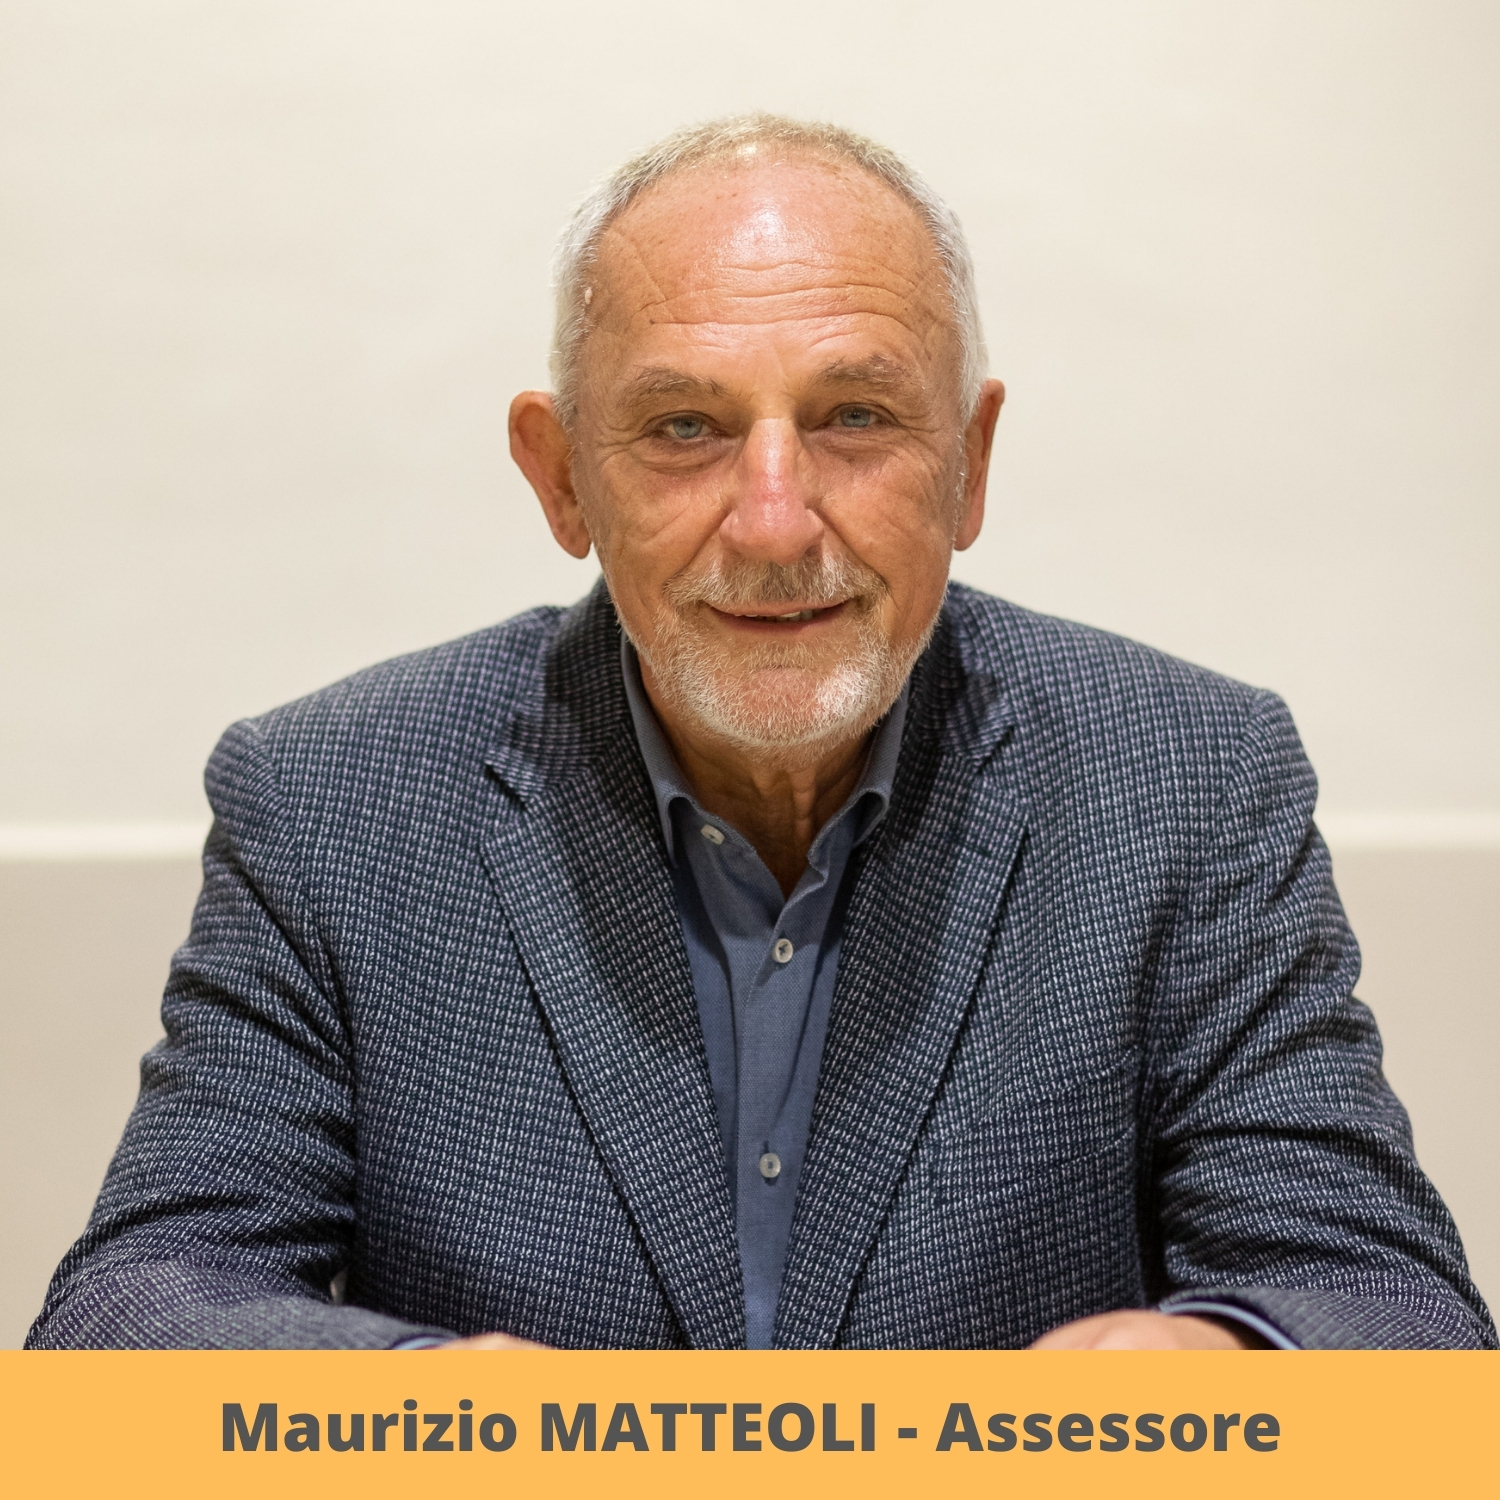 Maurizio MATTEOLI (Assessore)